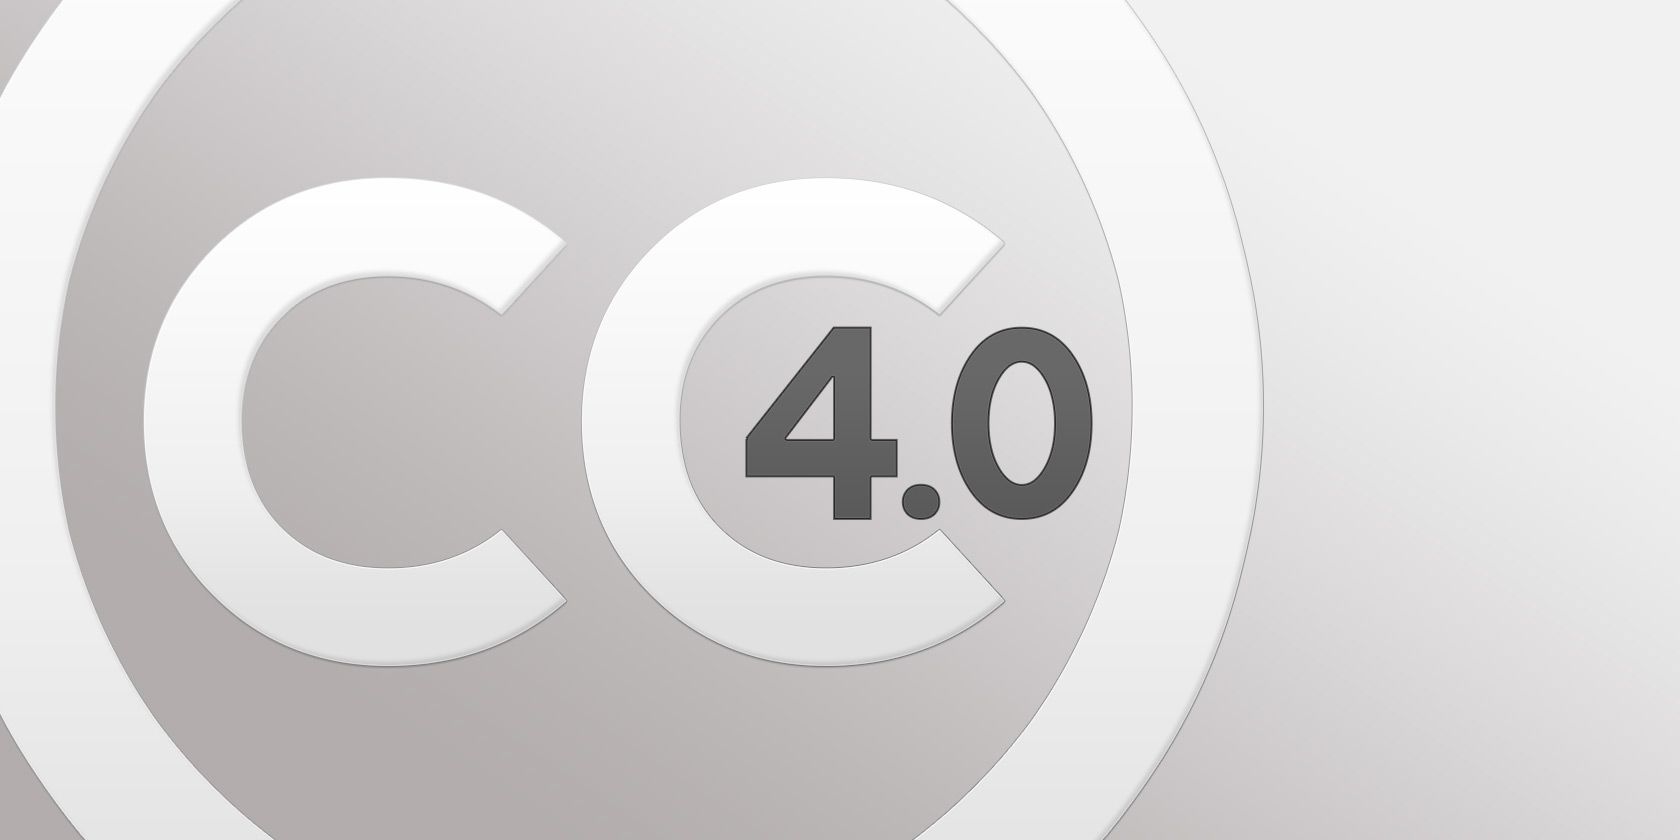 Creative commons 4.0. Картинки с лицензией Creative Commons. Бесплатные картинкипо лицензии Creative commmons.